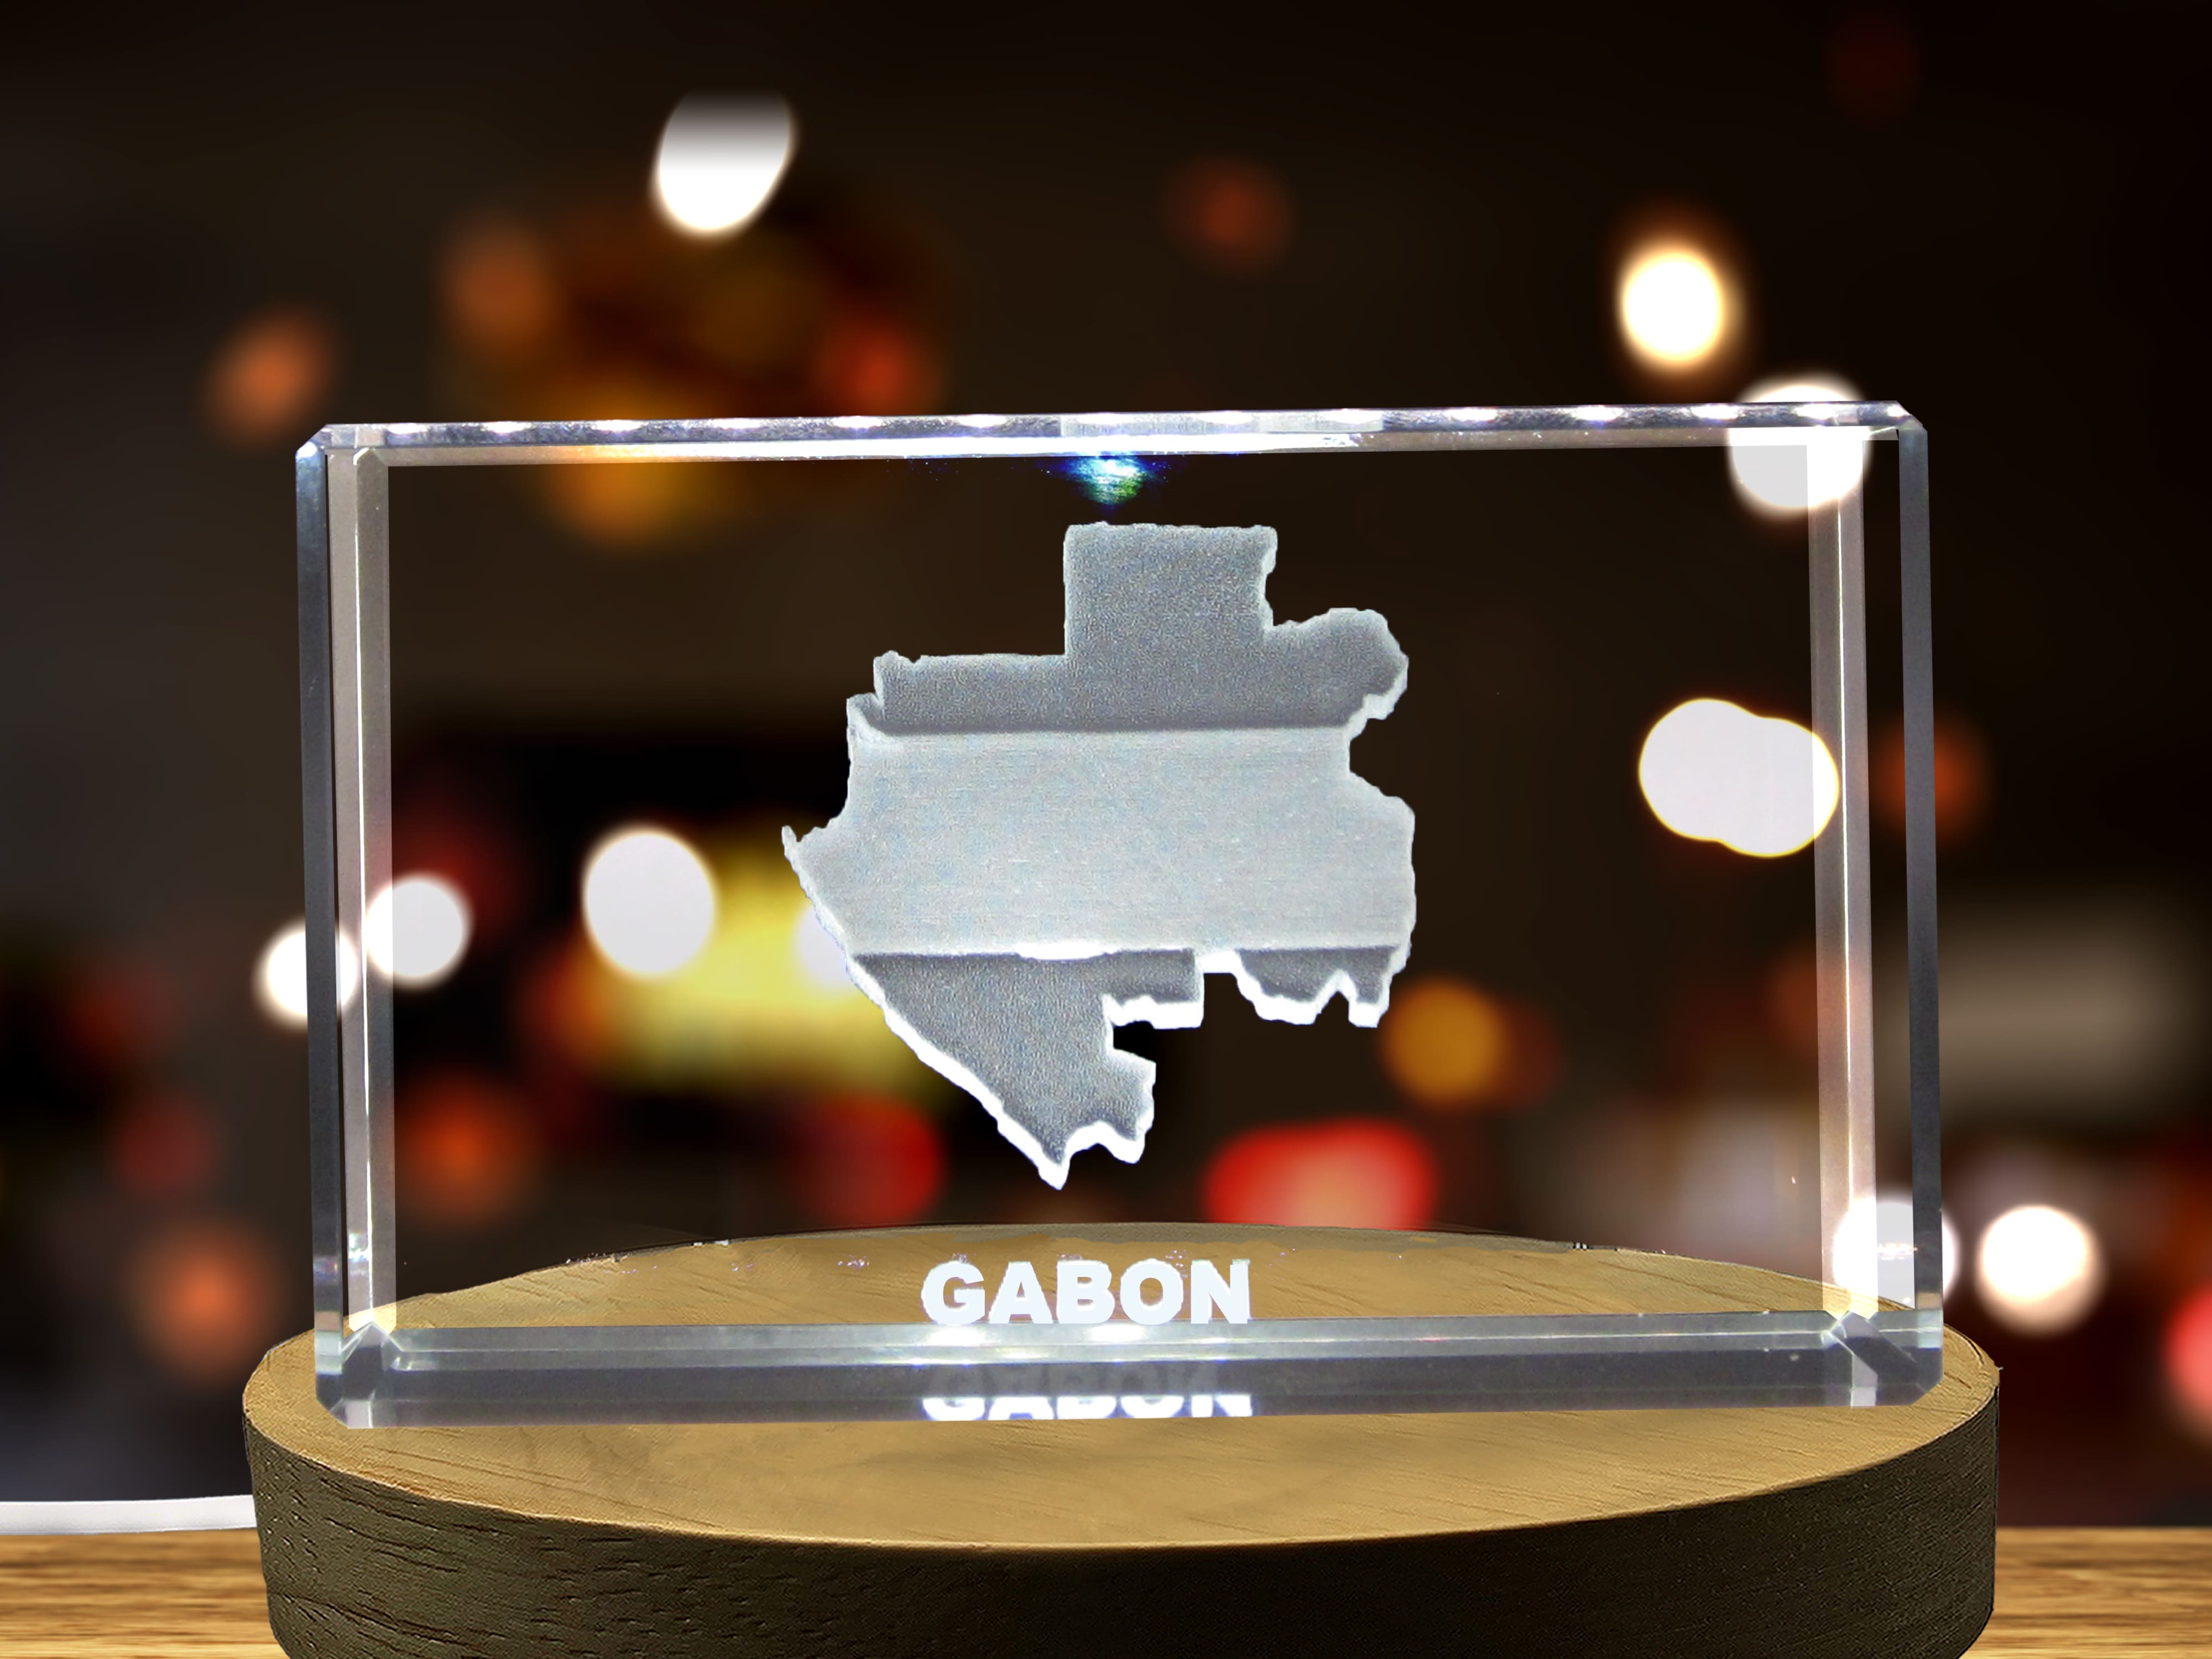 Gabon 3D Engraved Crystal 3D Engraved Crystal Keepsake/Gift/Decor/Collectible/Souvenir A&B Crystal Collection